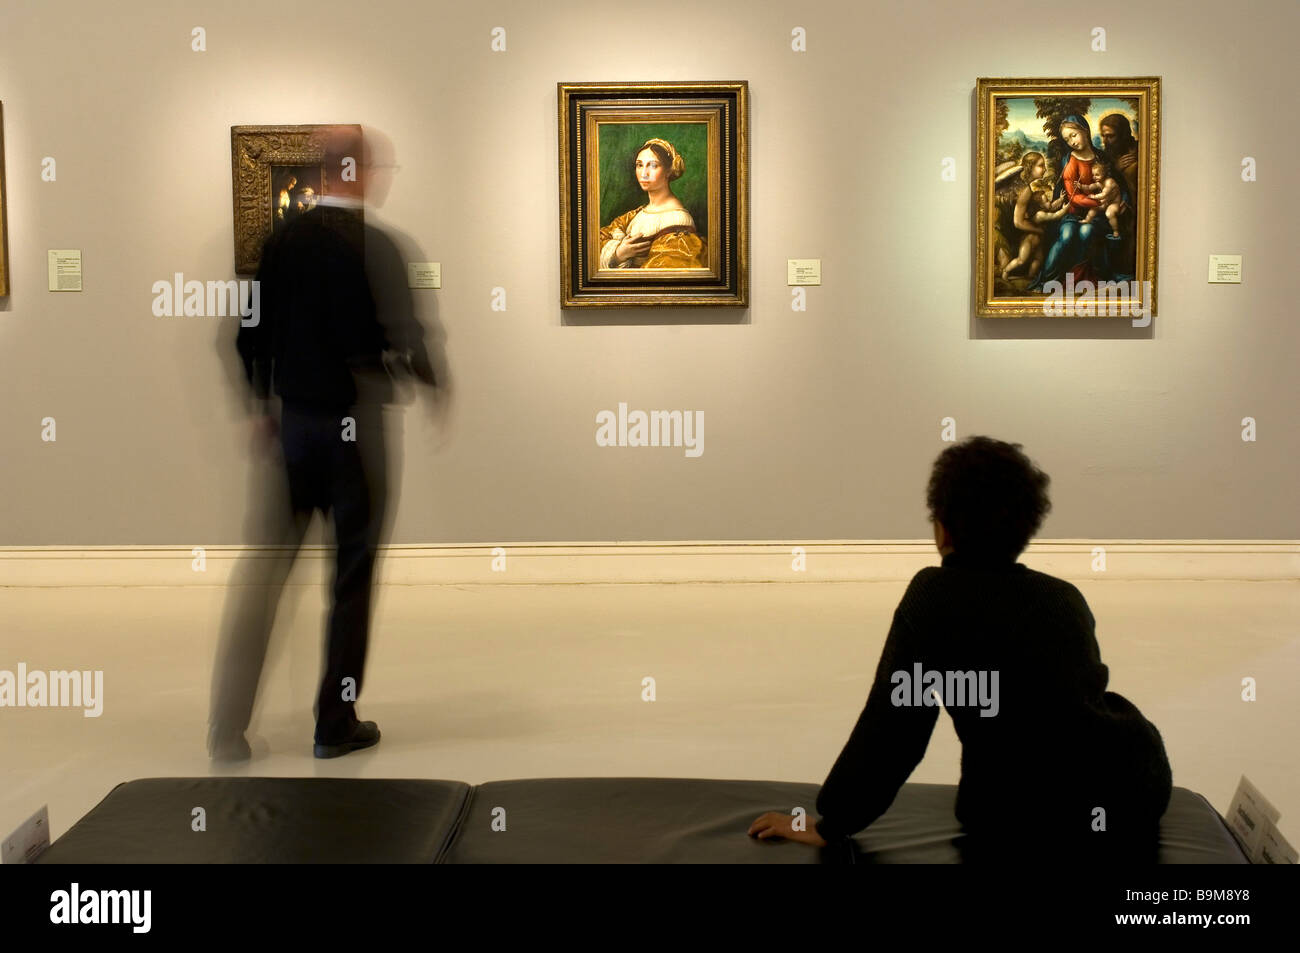 La France, Bas Rhin, Strasbourg, le Palais Rohan, Musée des beaux-arts, peinture de Raphaël, portrait d'une jeune femme Banque D'Images